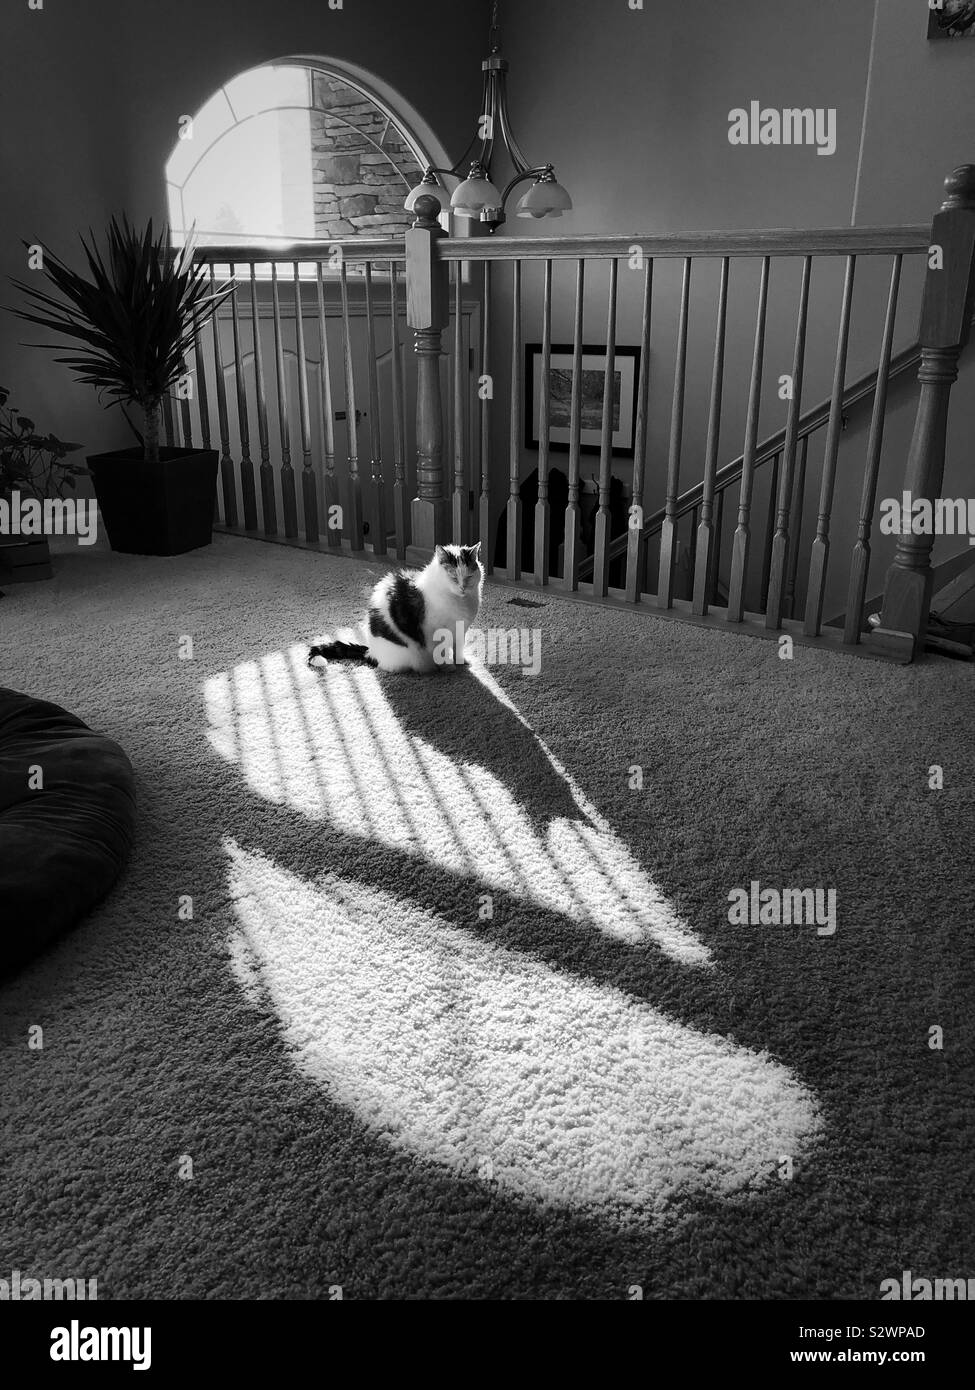 Un chat jette une ombre en noir et blanc. Banque D'Images